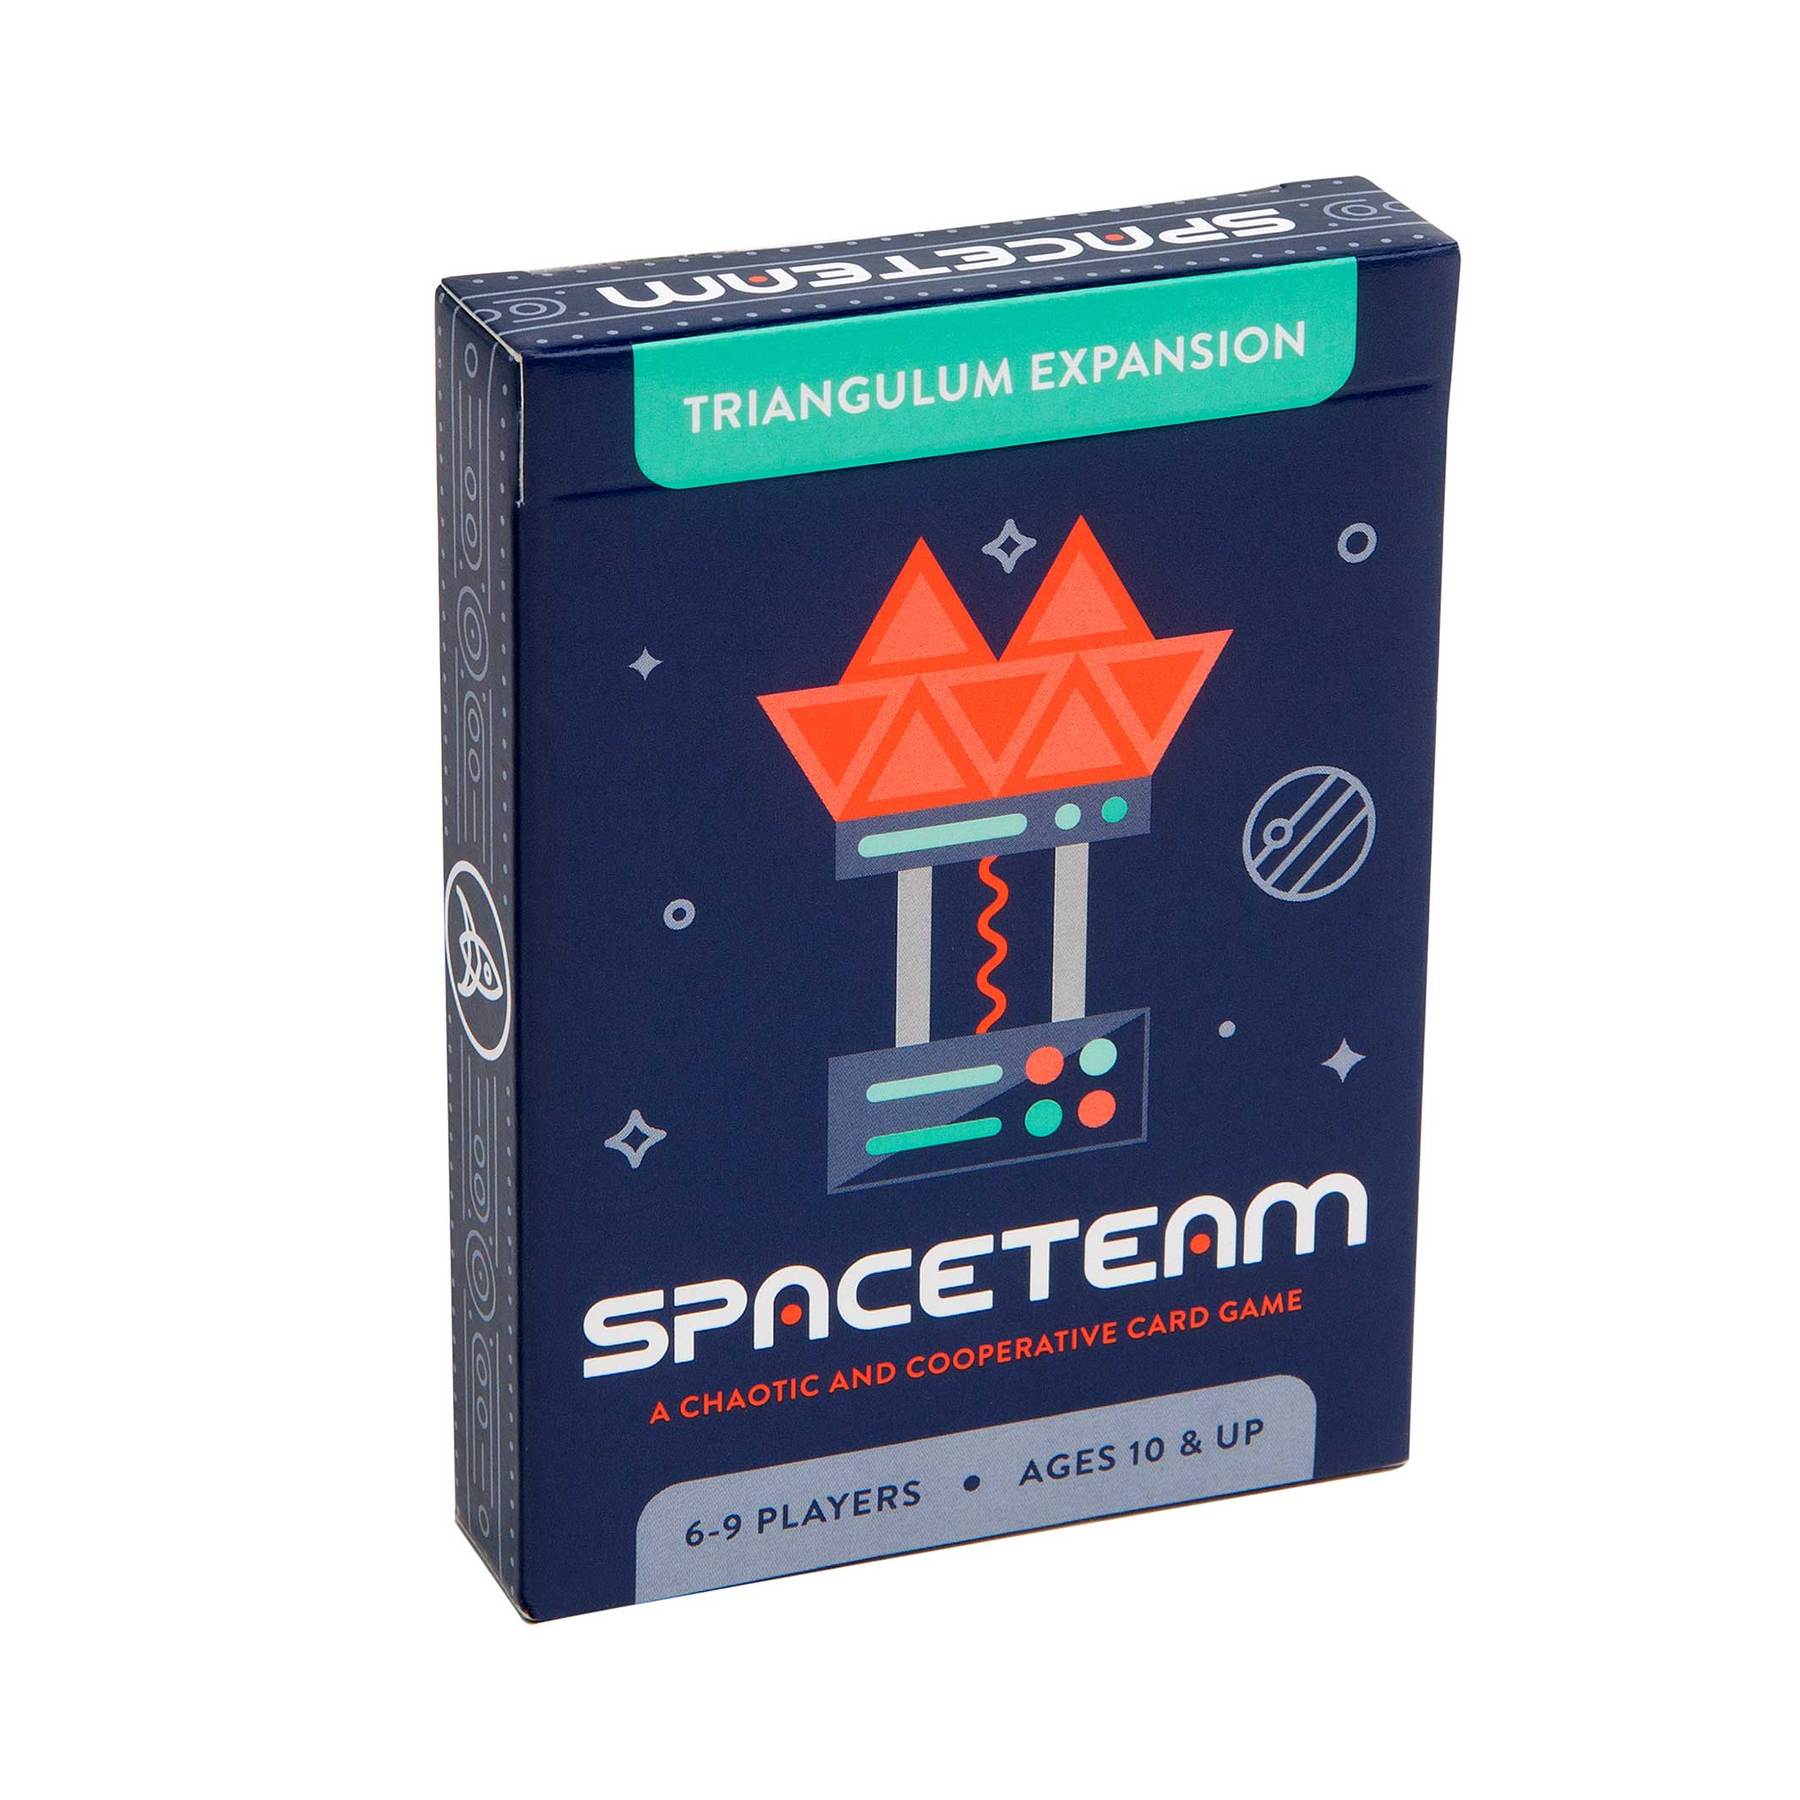 Spaceteam Triangulum Expansion